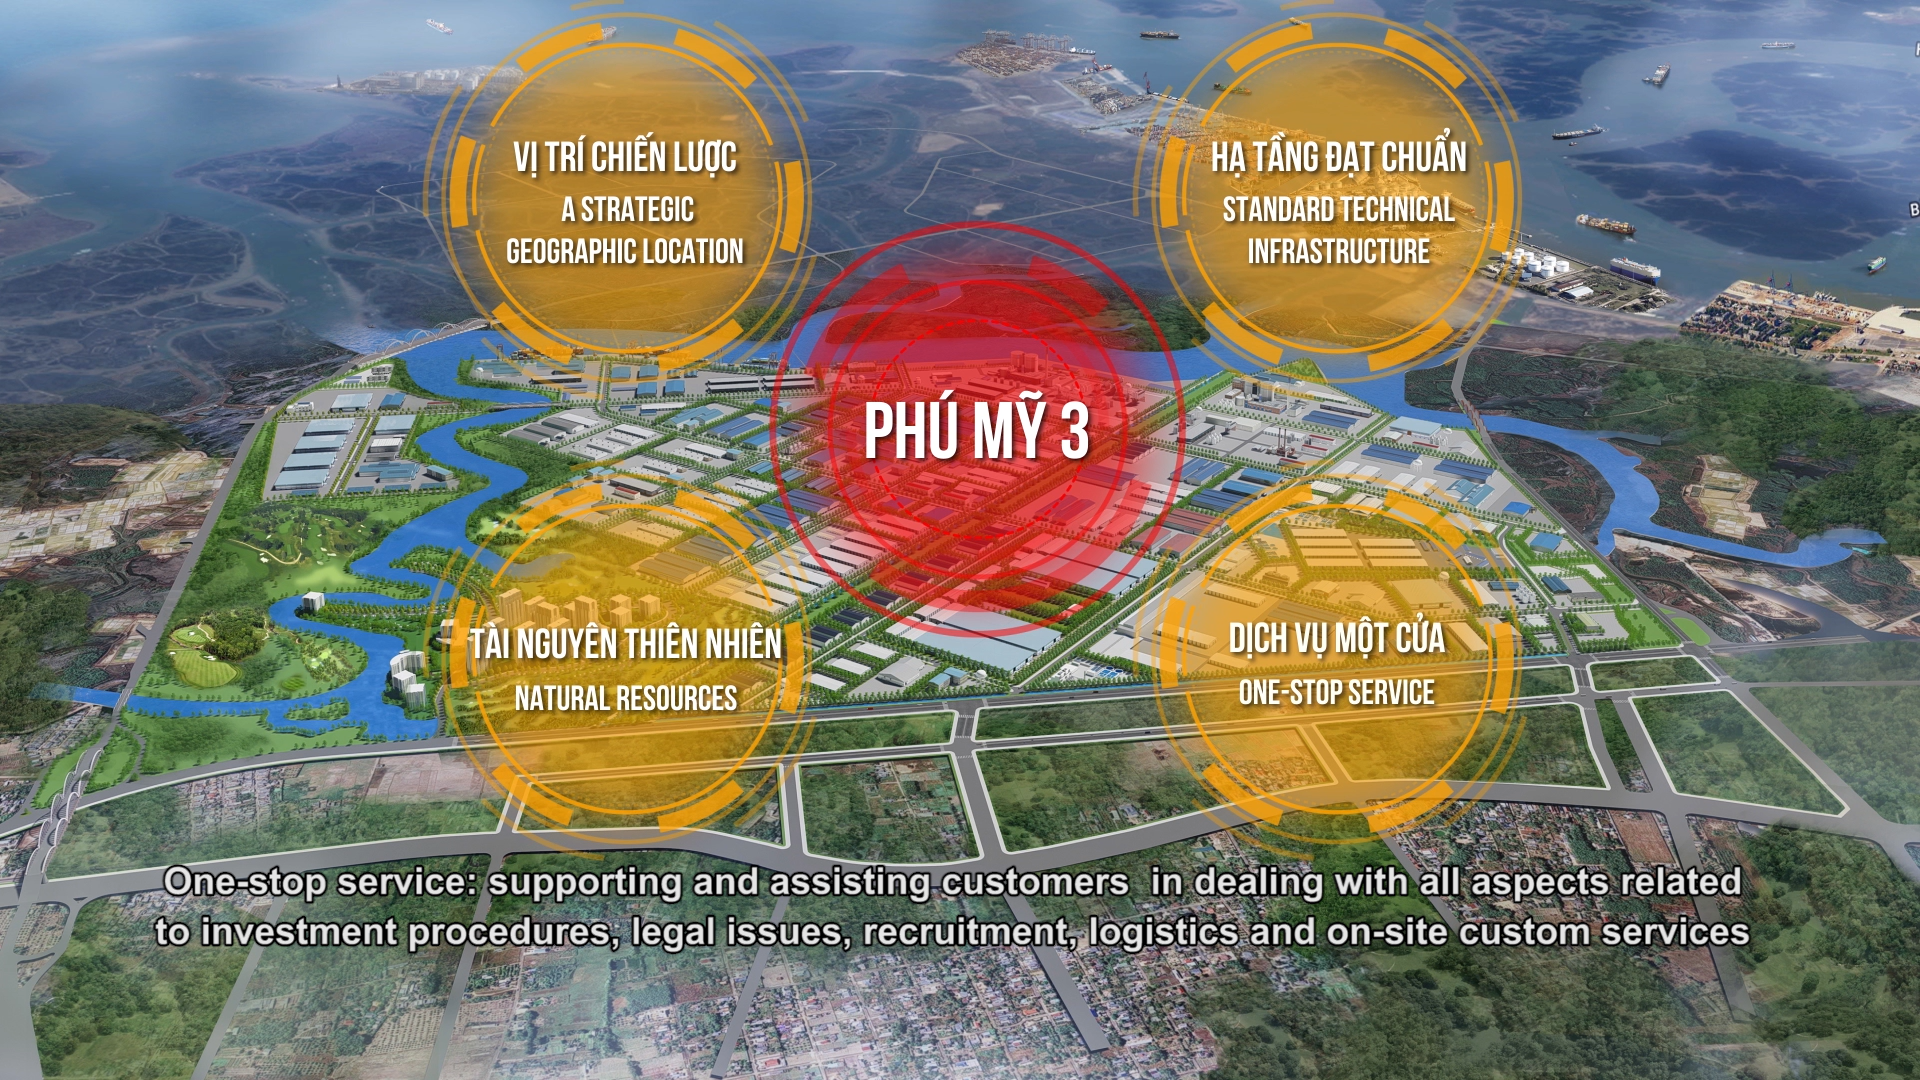 푸미3특화산업단지의 탄생 및 5년간 발전 과정에 대한 홍보 동영상